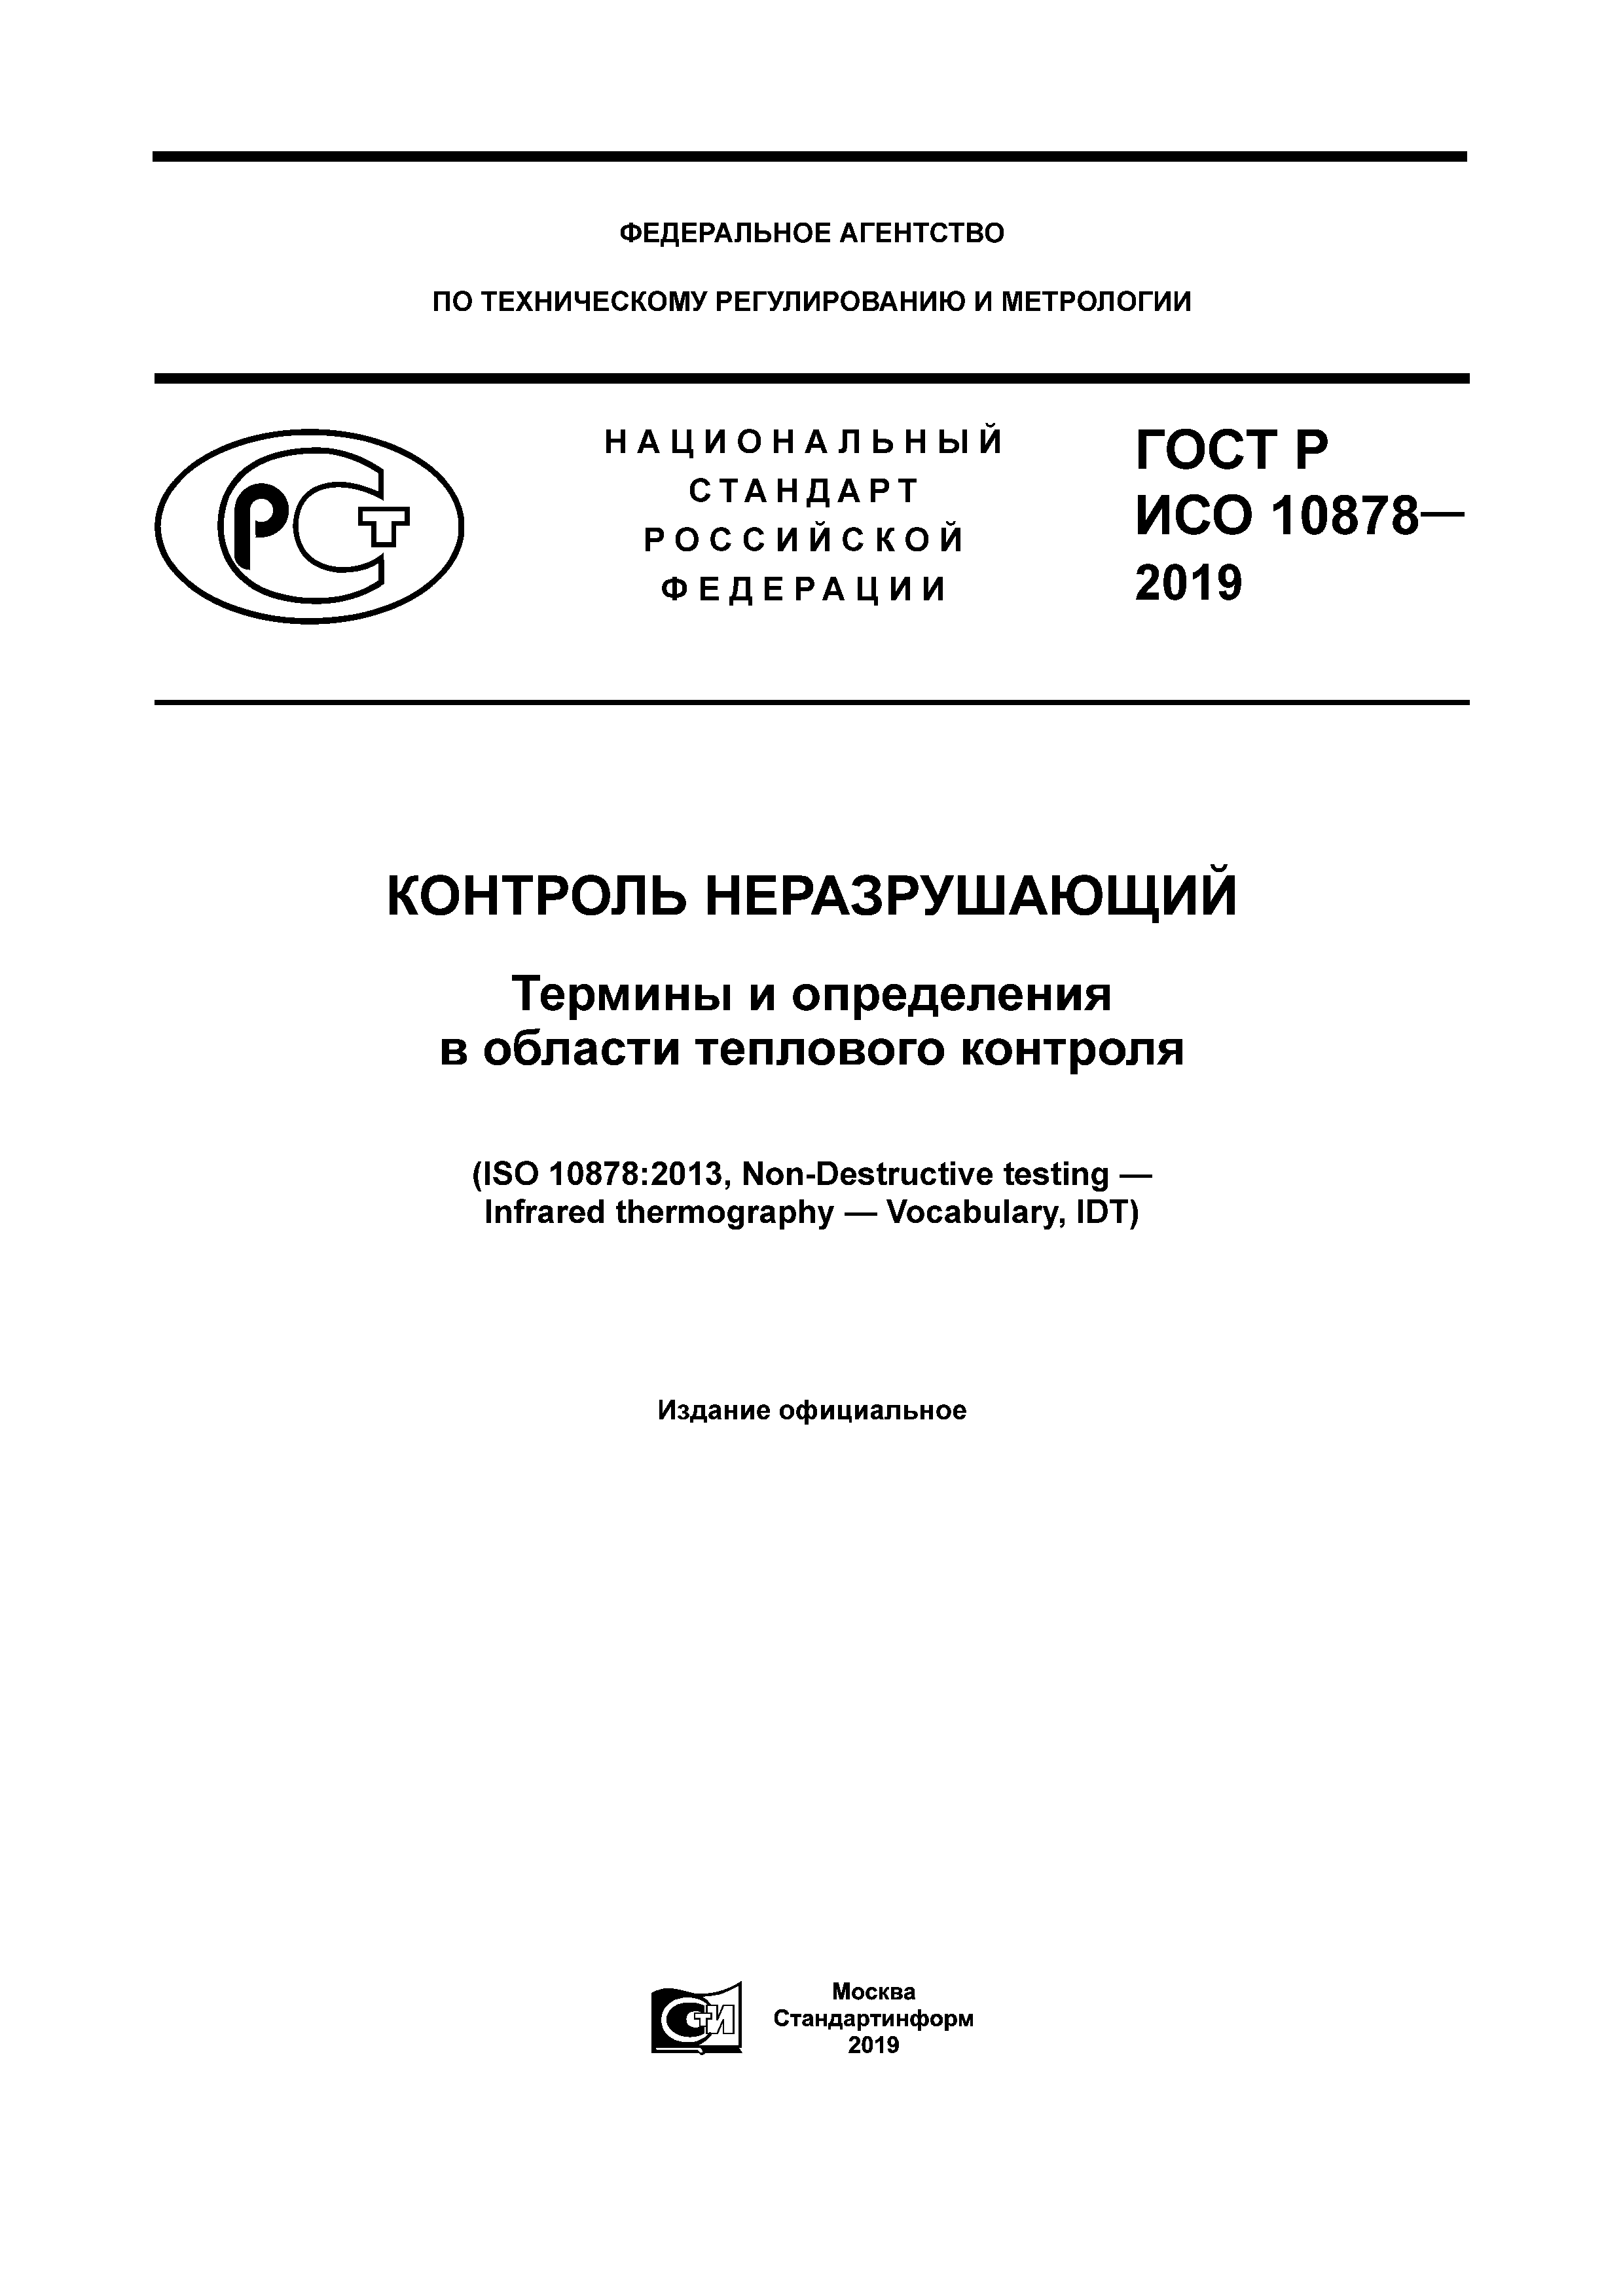 ГОСТ Р ИСО 10878-2019